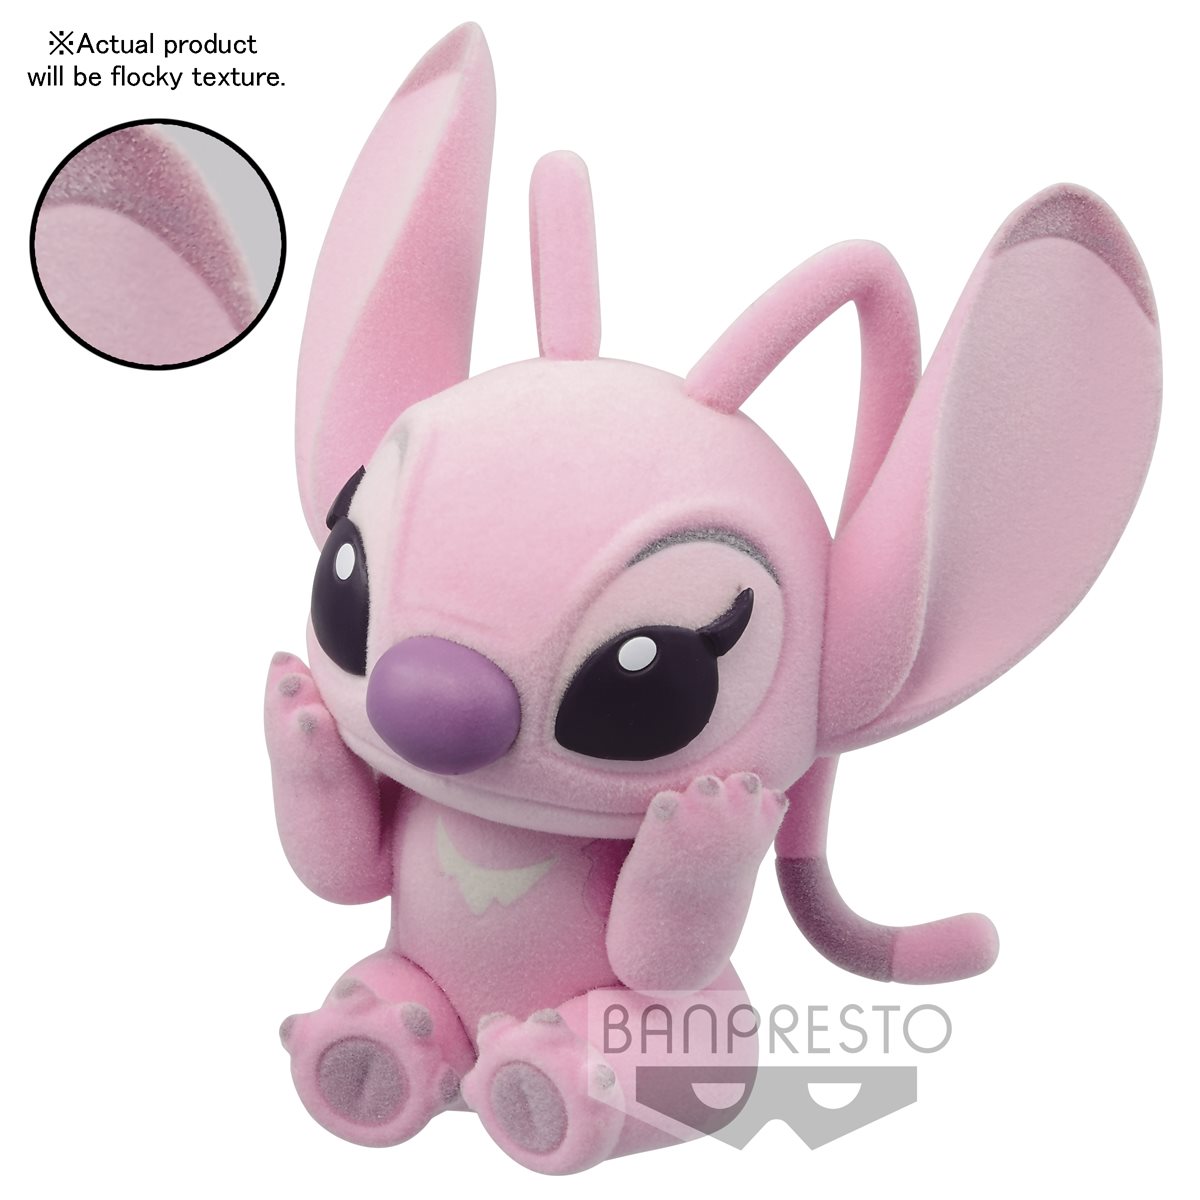 Figurine Stitch ou Angel, Fluffy Puffy - Disney - Banpresto